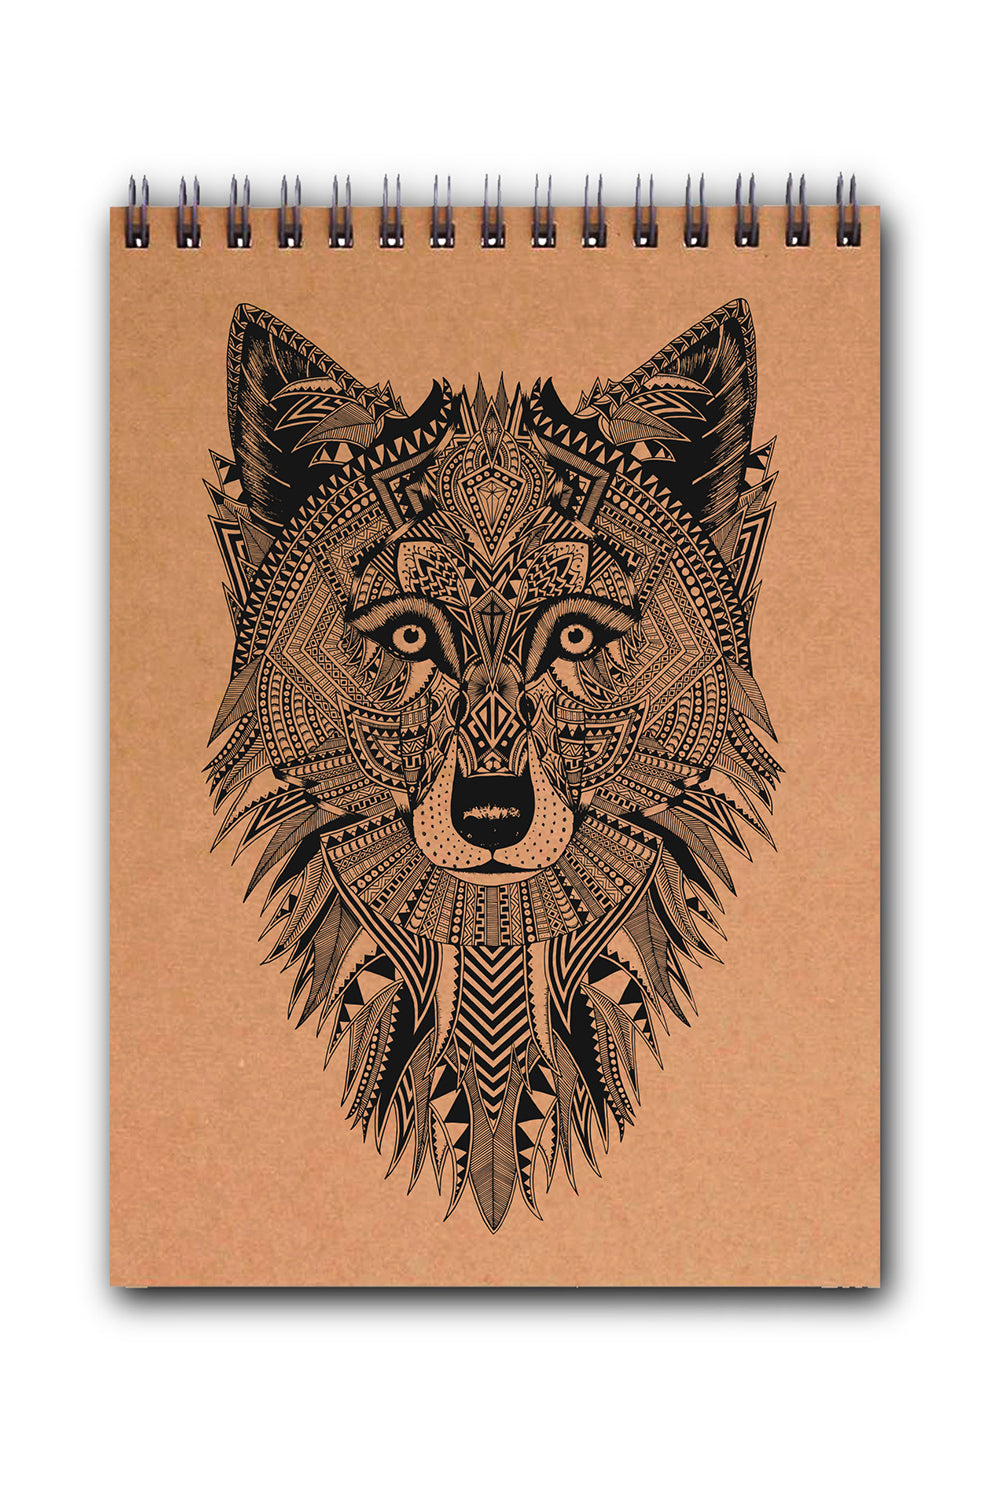 Grey Wolf Sketchbook